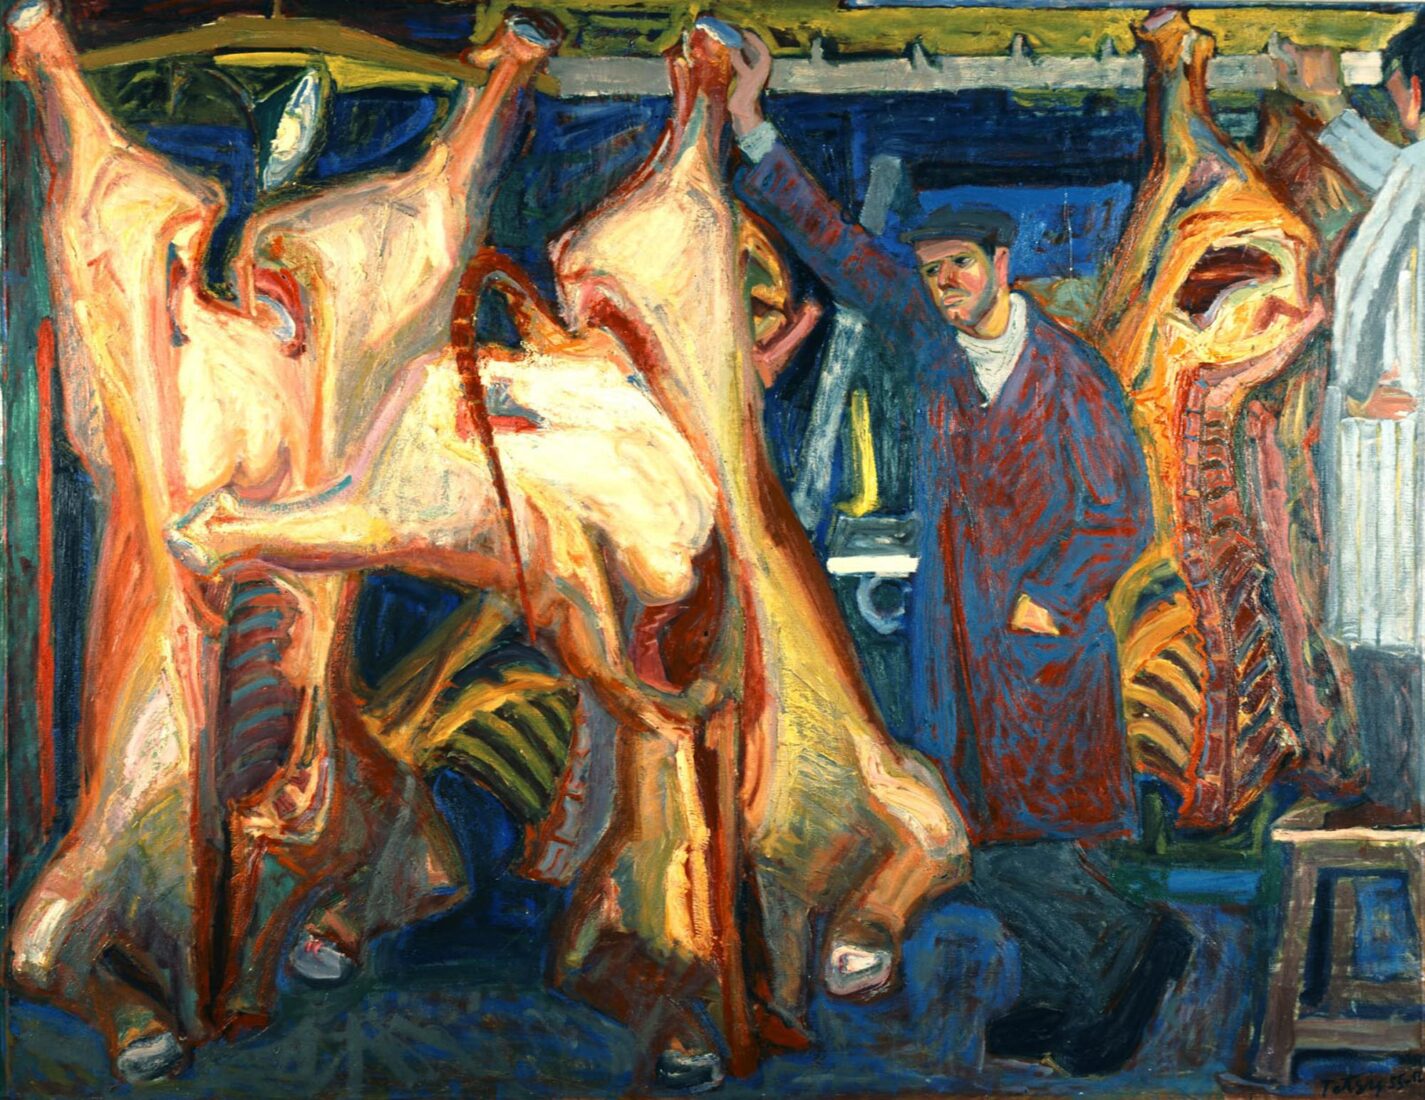 Butcher Shop - Tetsis Panayiotis